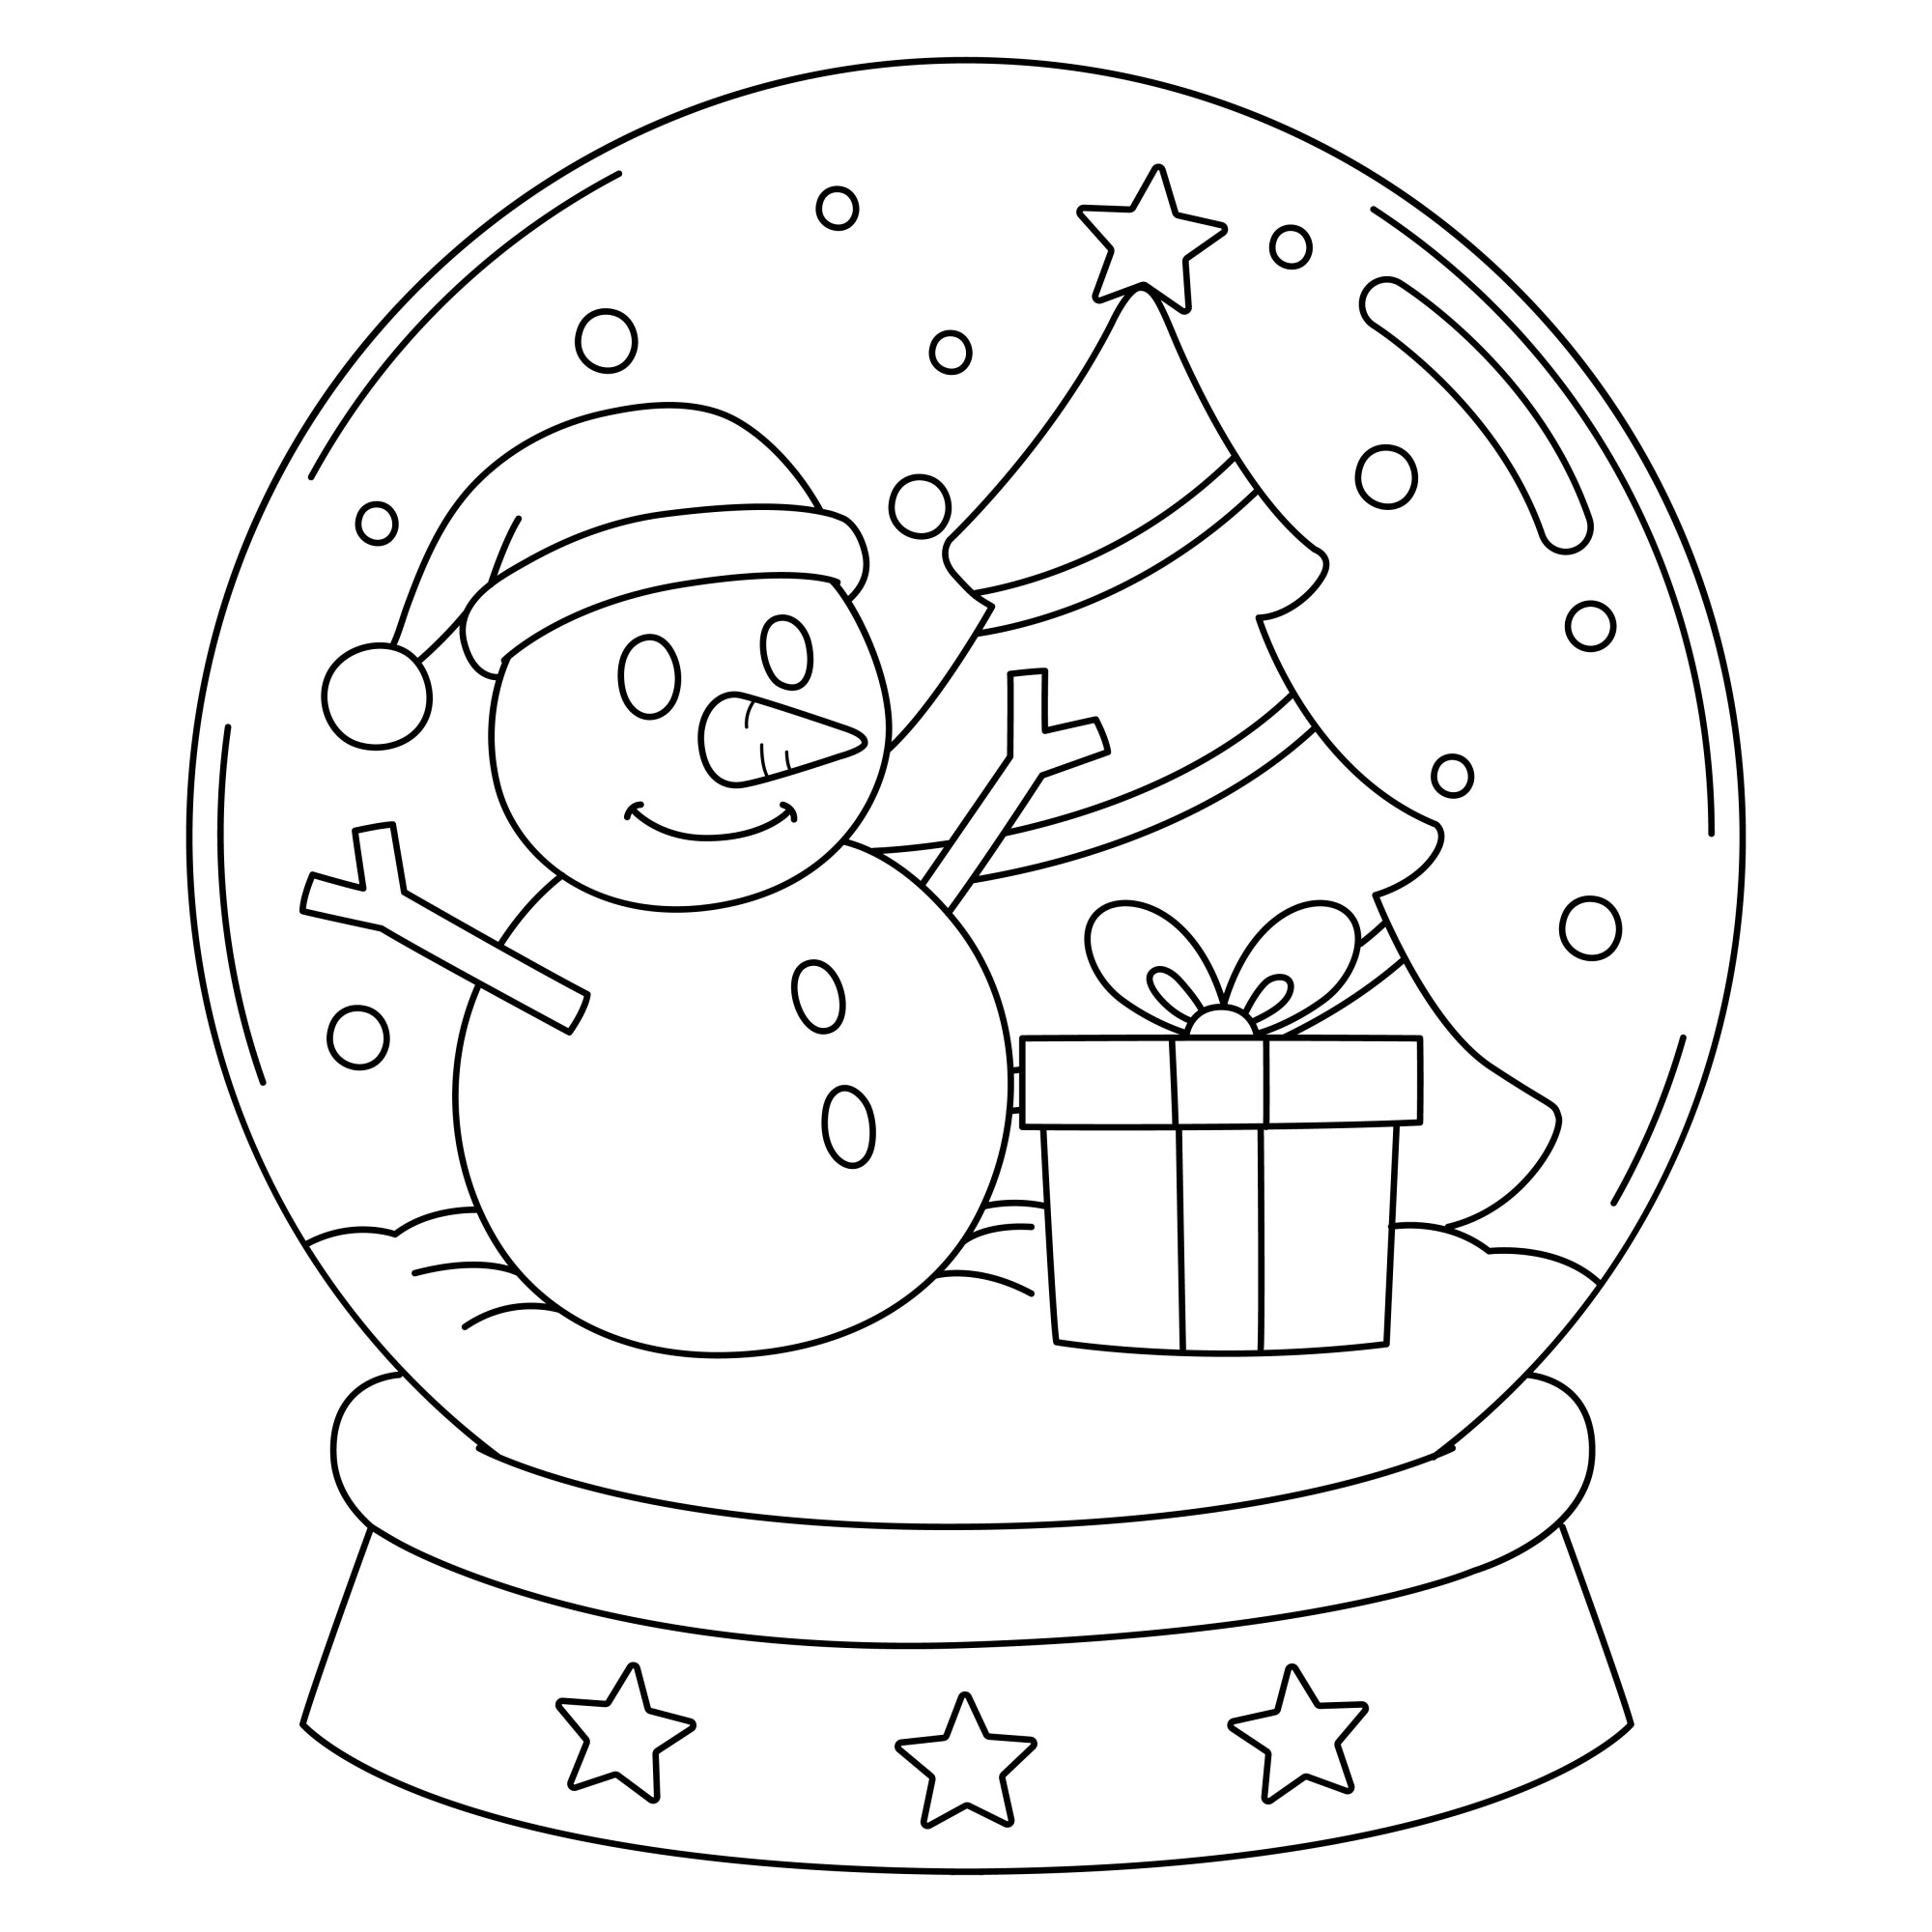 Раскраска для детей: новогодний снежный шар со снеговиком и ёлкой